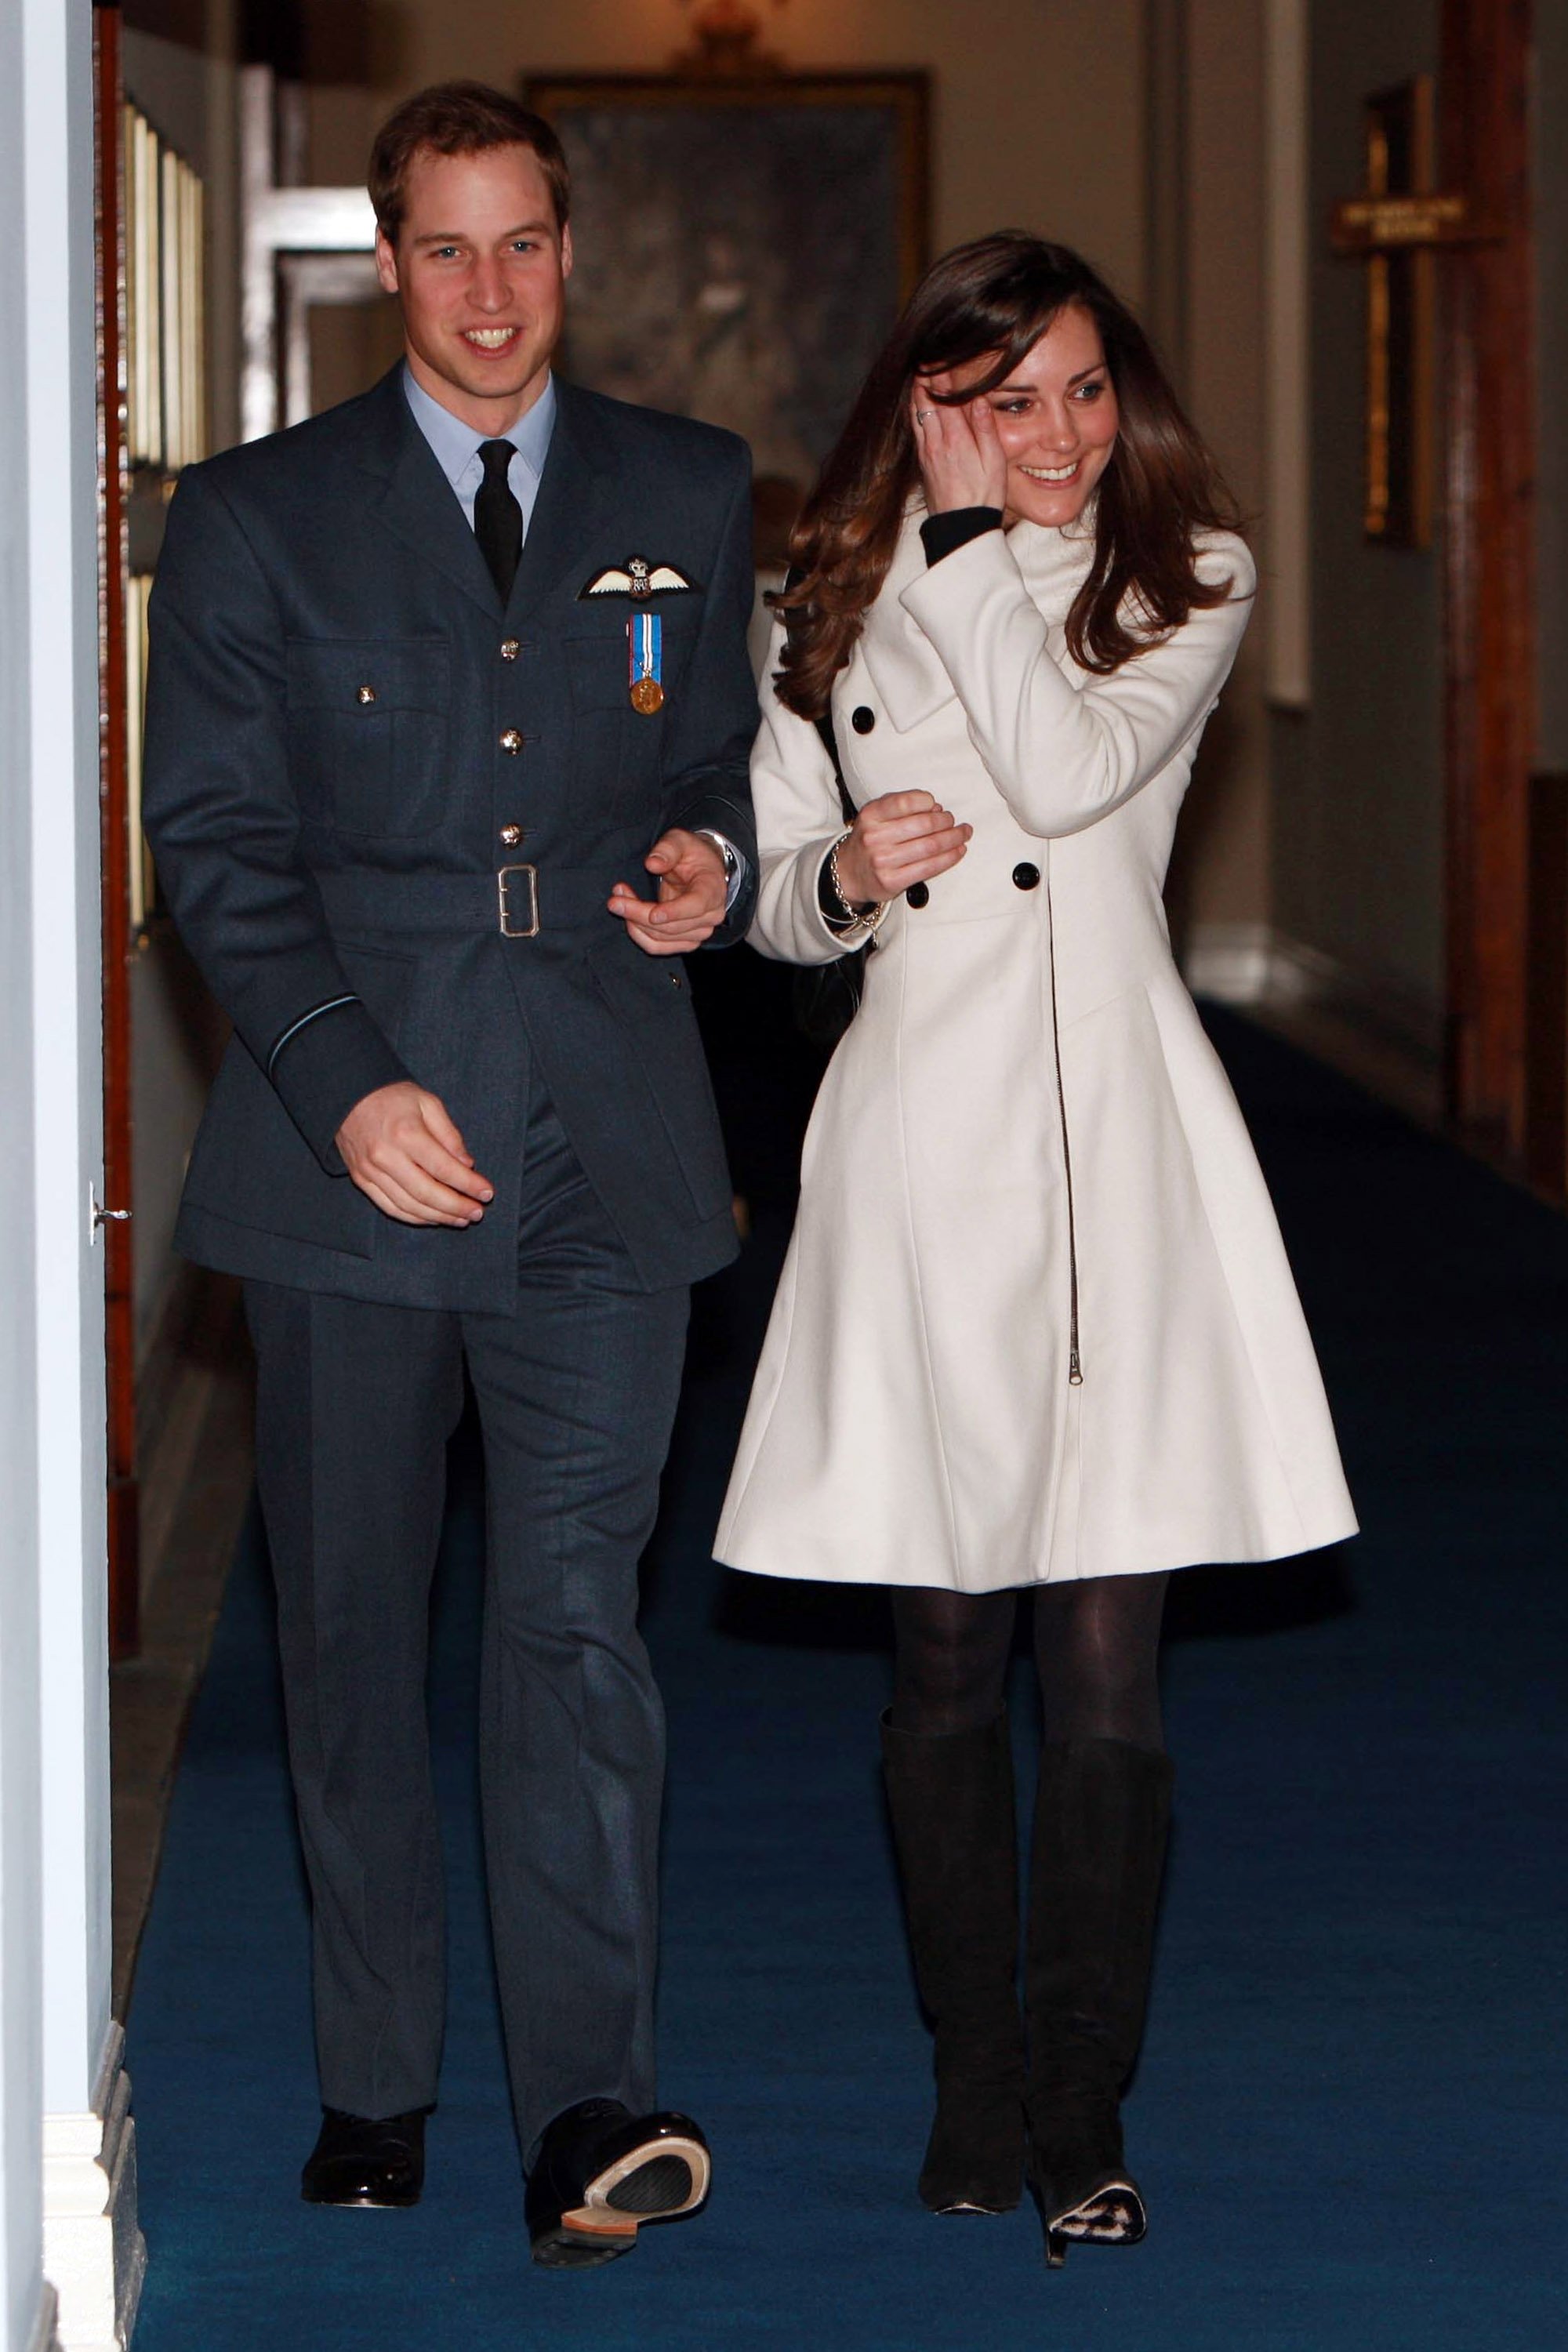 Le Prince William photographié en train de marcher avec sa petite amie Kate Middleton après sa cérémonie de remise de diplôme à la RAF Cranwell le 11 avril 2008 à Cranwell, en Angleterre. | Source : Getty Images   